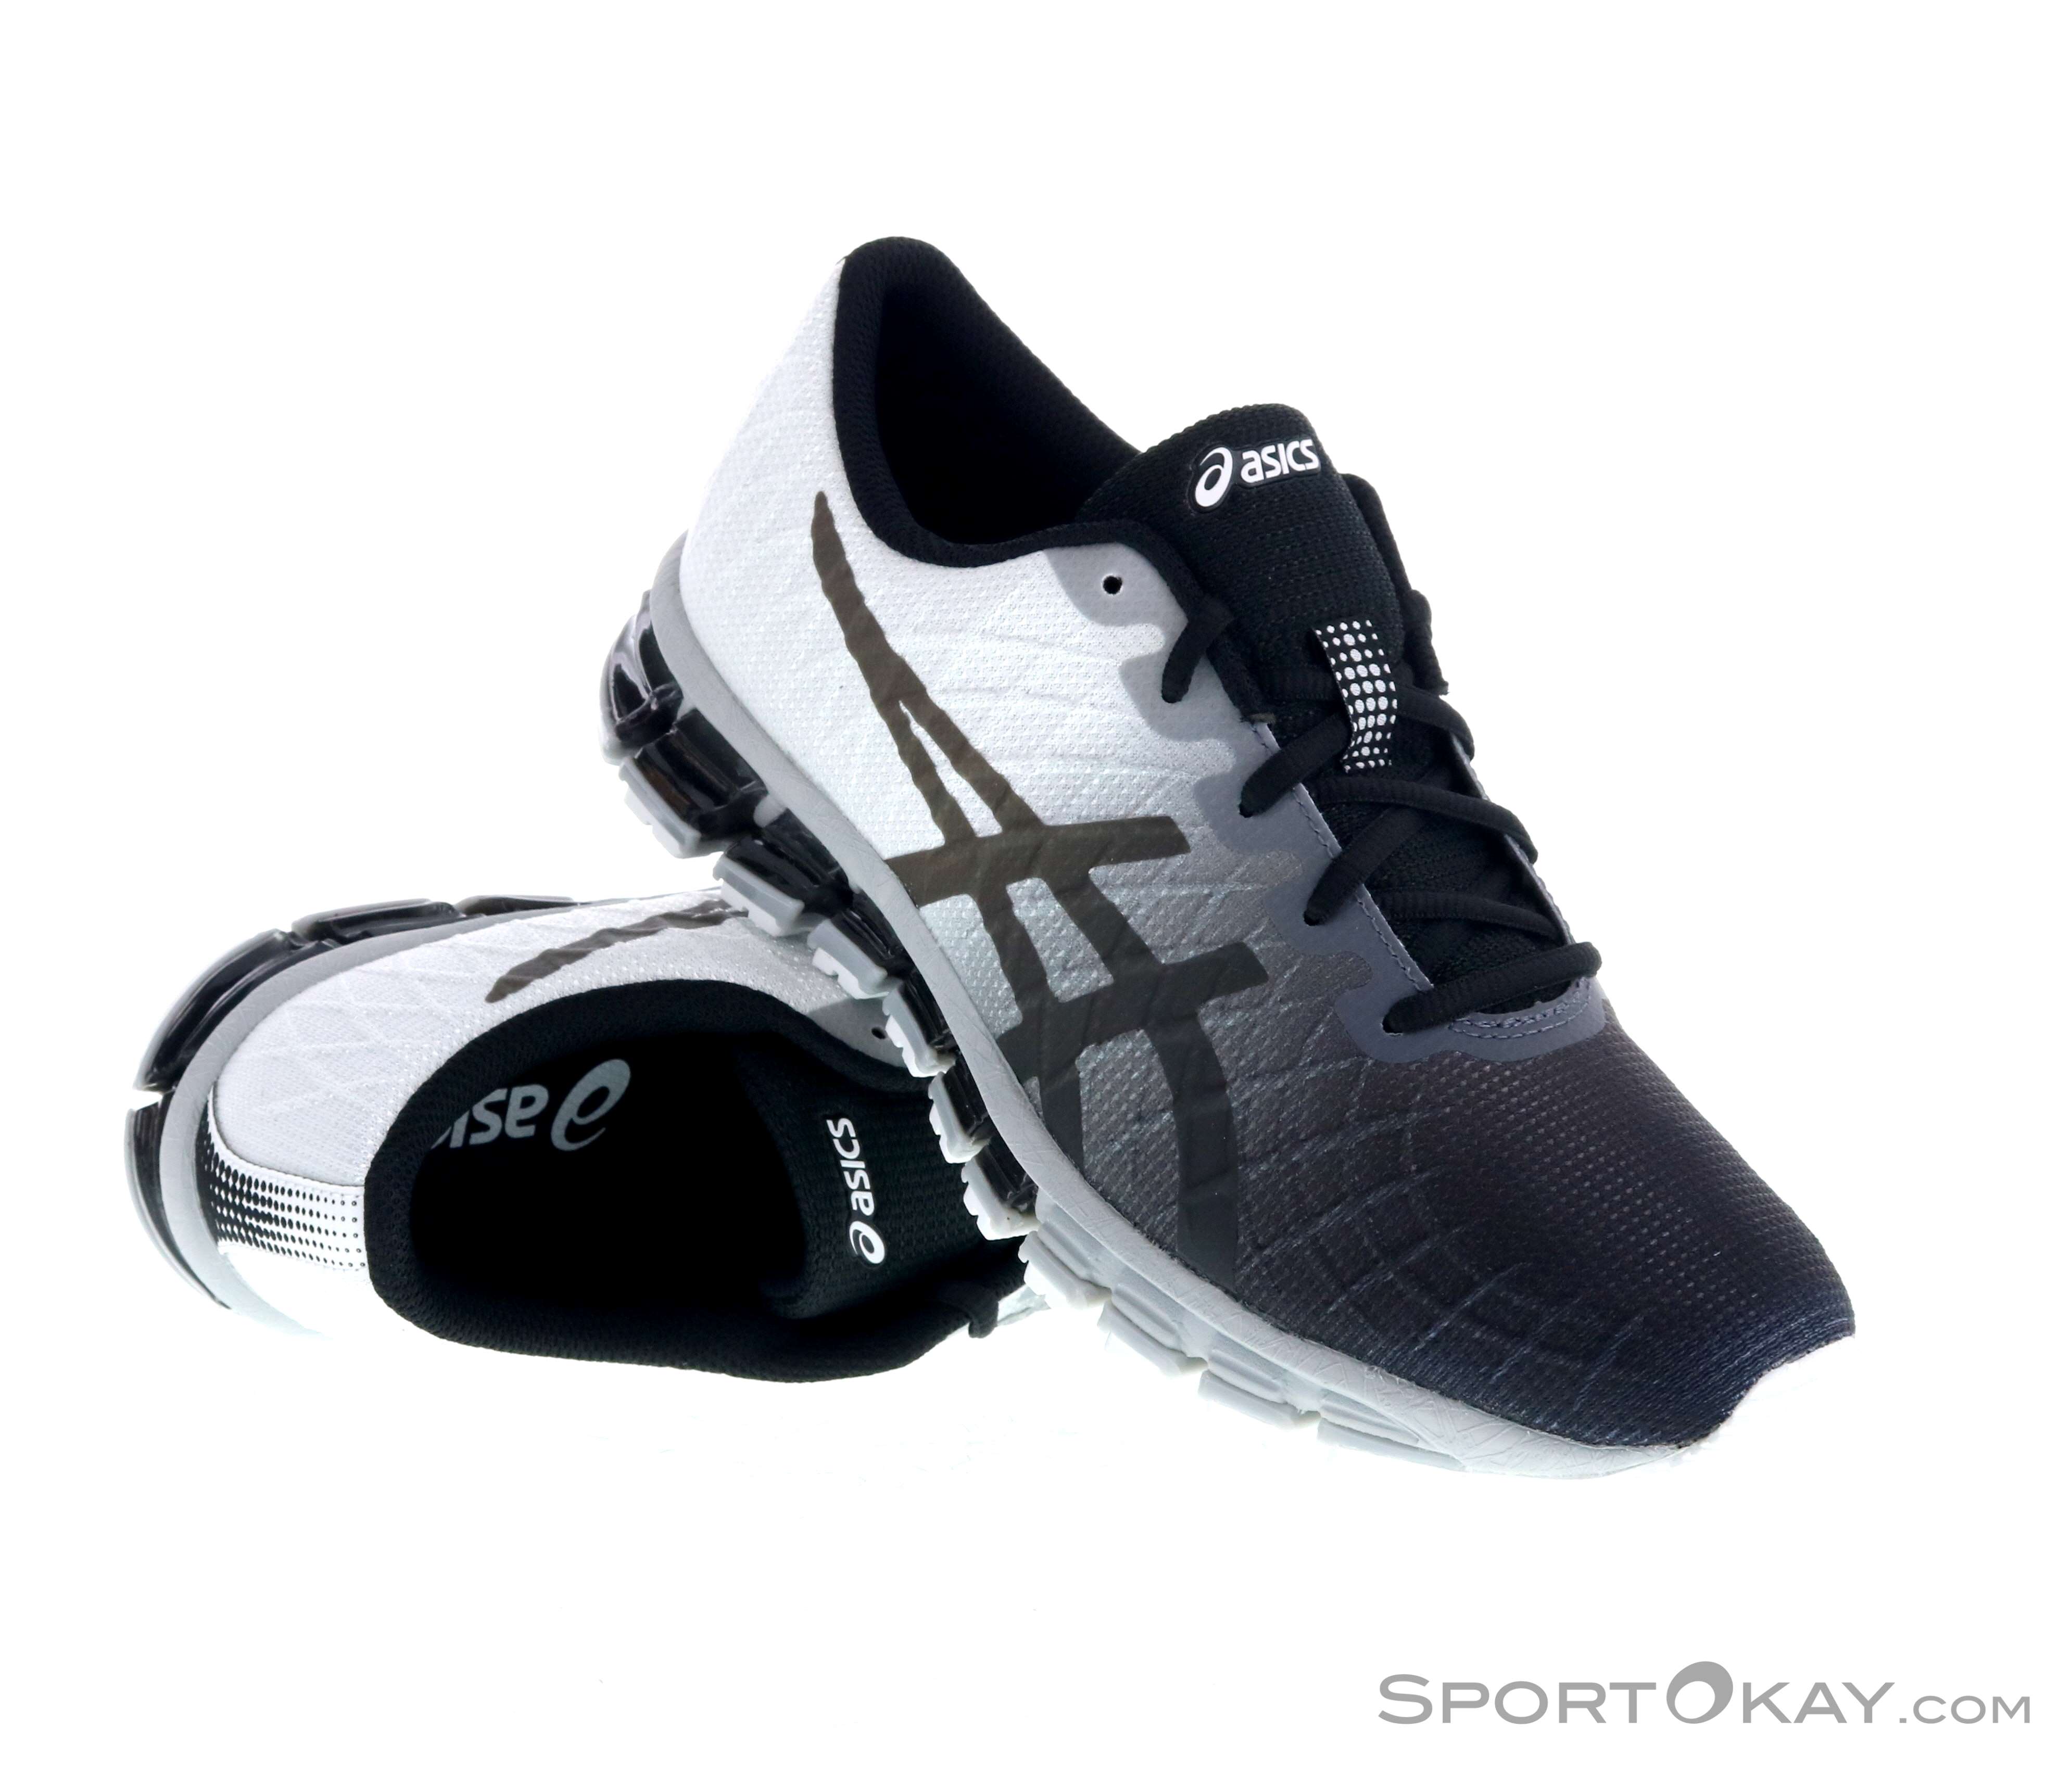 asics range of running shoes